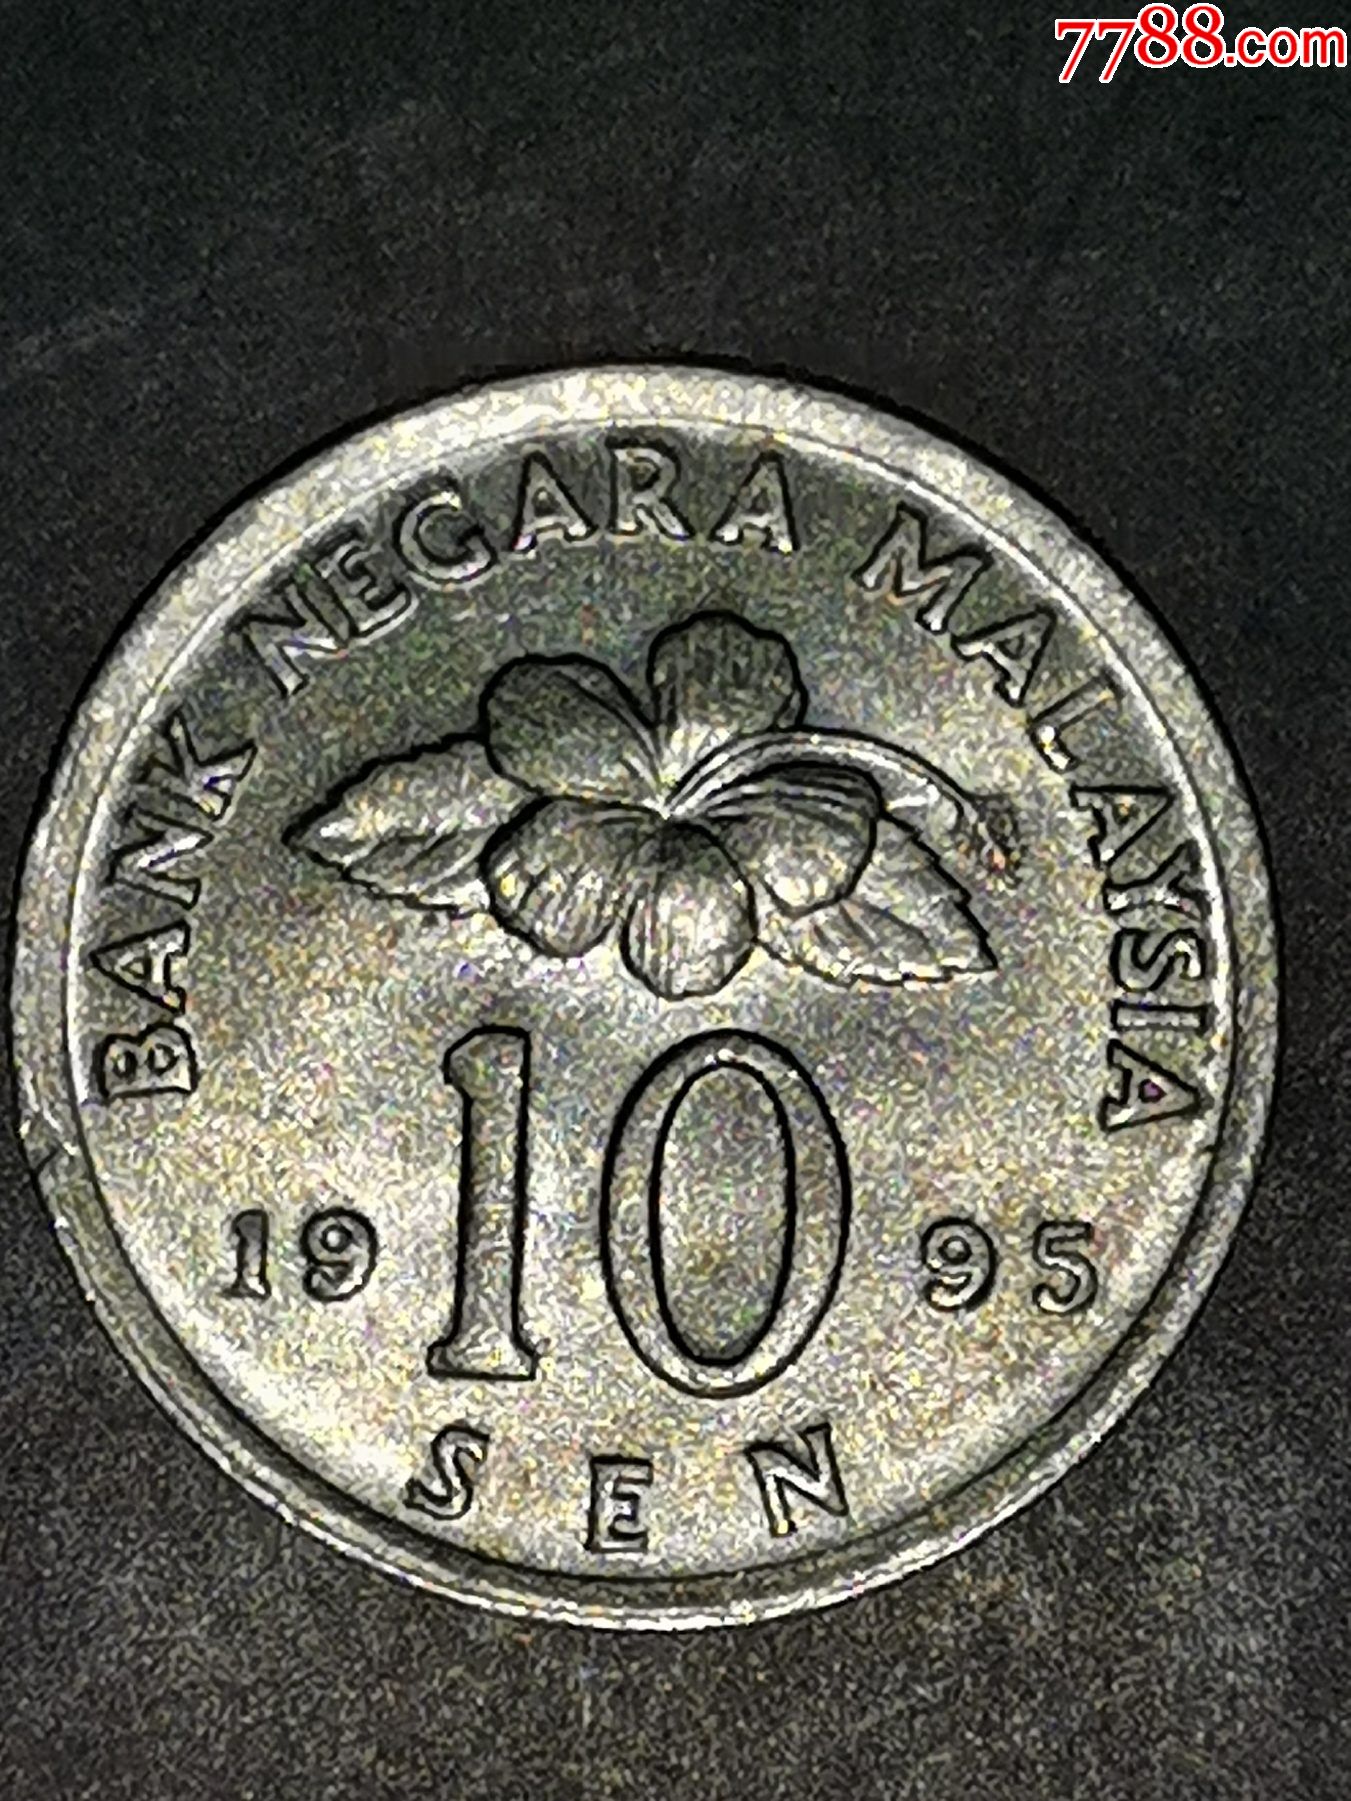 马来西亚1995年10分